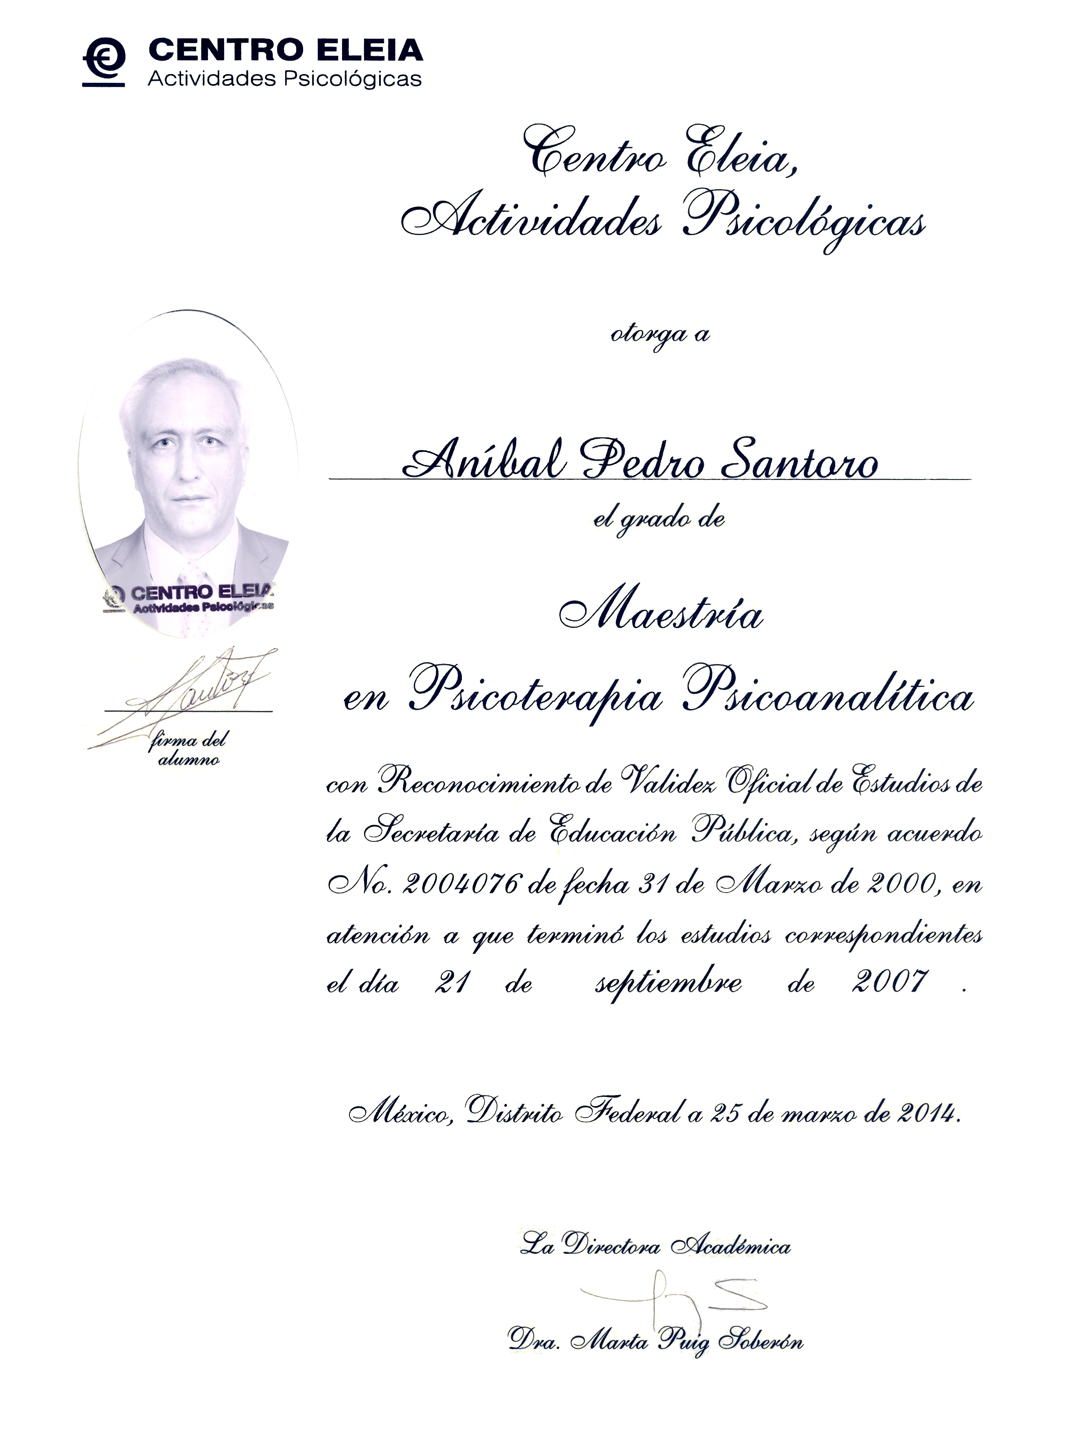 Dr. Aníbal P Santoro - Master in Psicoterapia Psicoanalitica #1